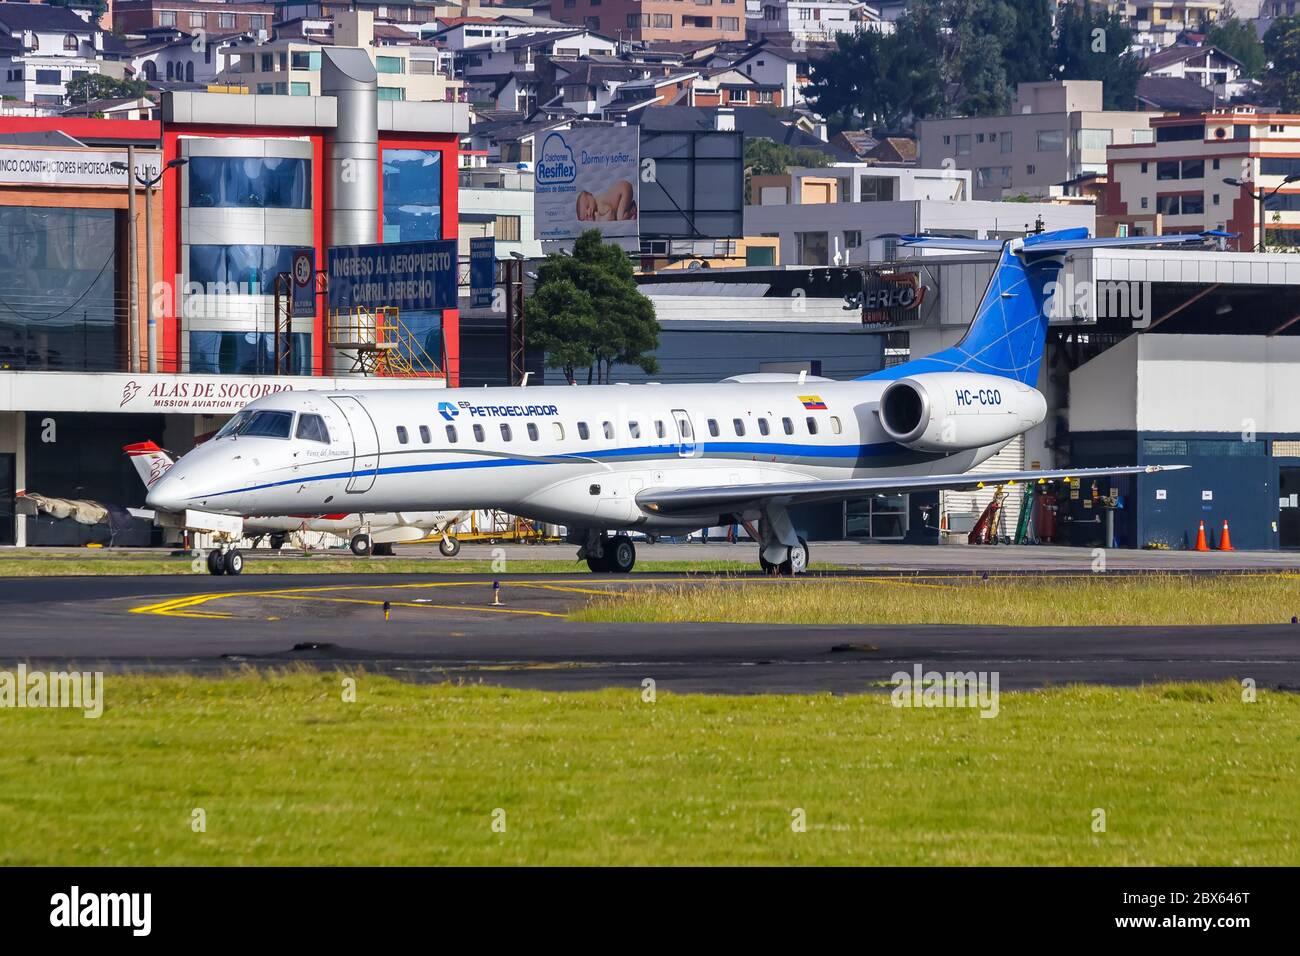 Quito, Ecuador June 16, 2011: PetroEcuador Embraer 145 airplane at Quito airport UIO in Ecuador. Stock Photo